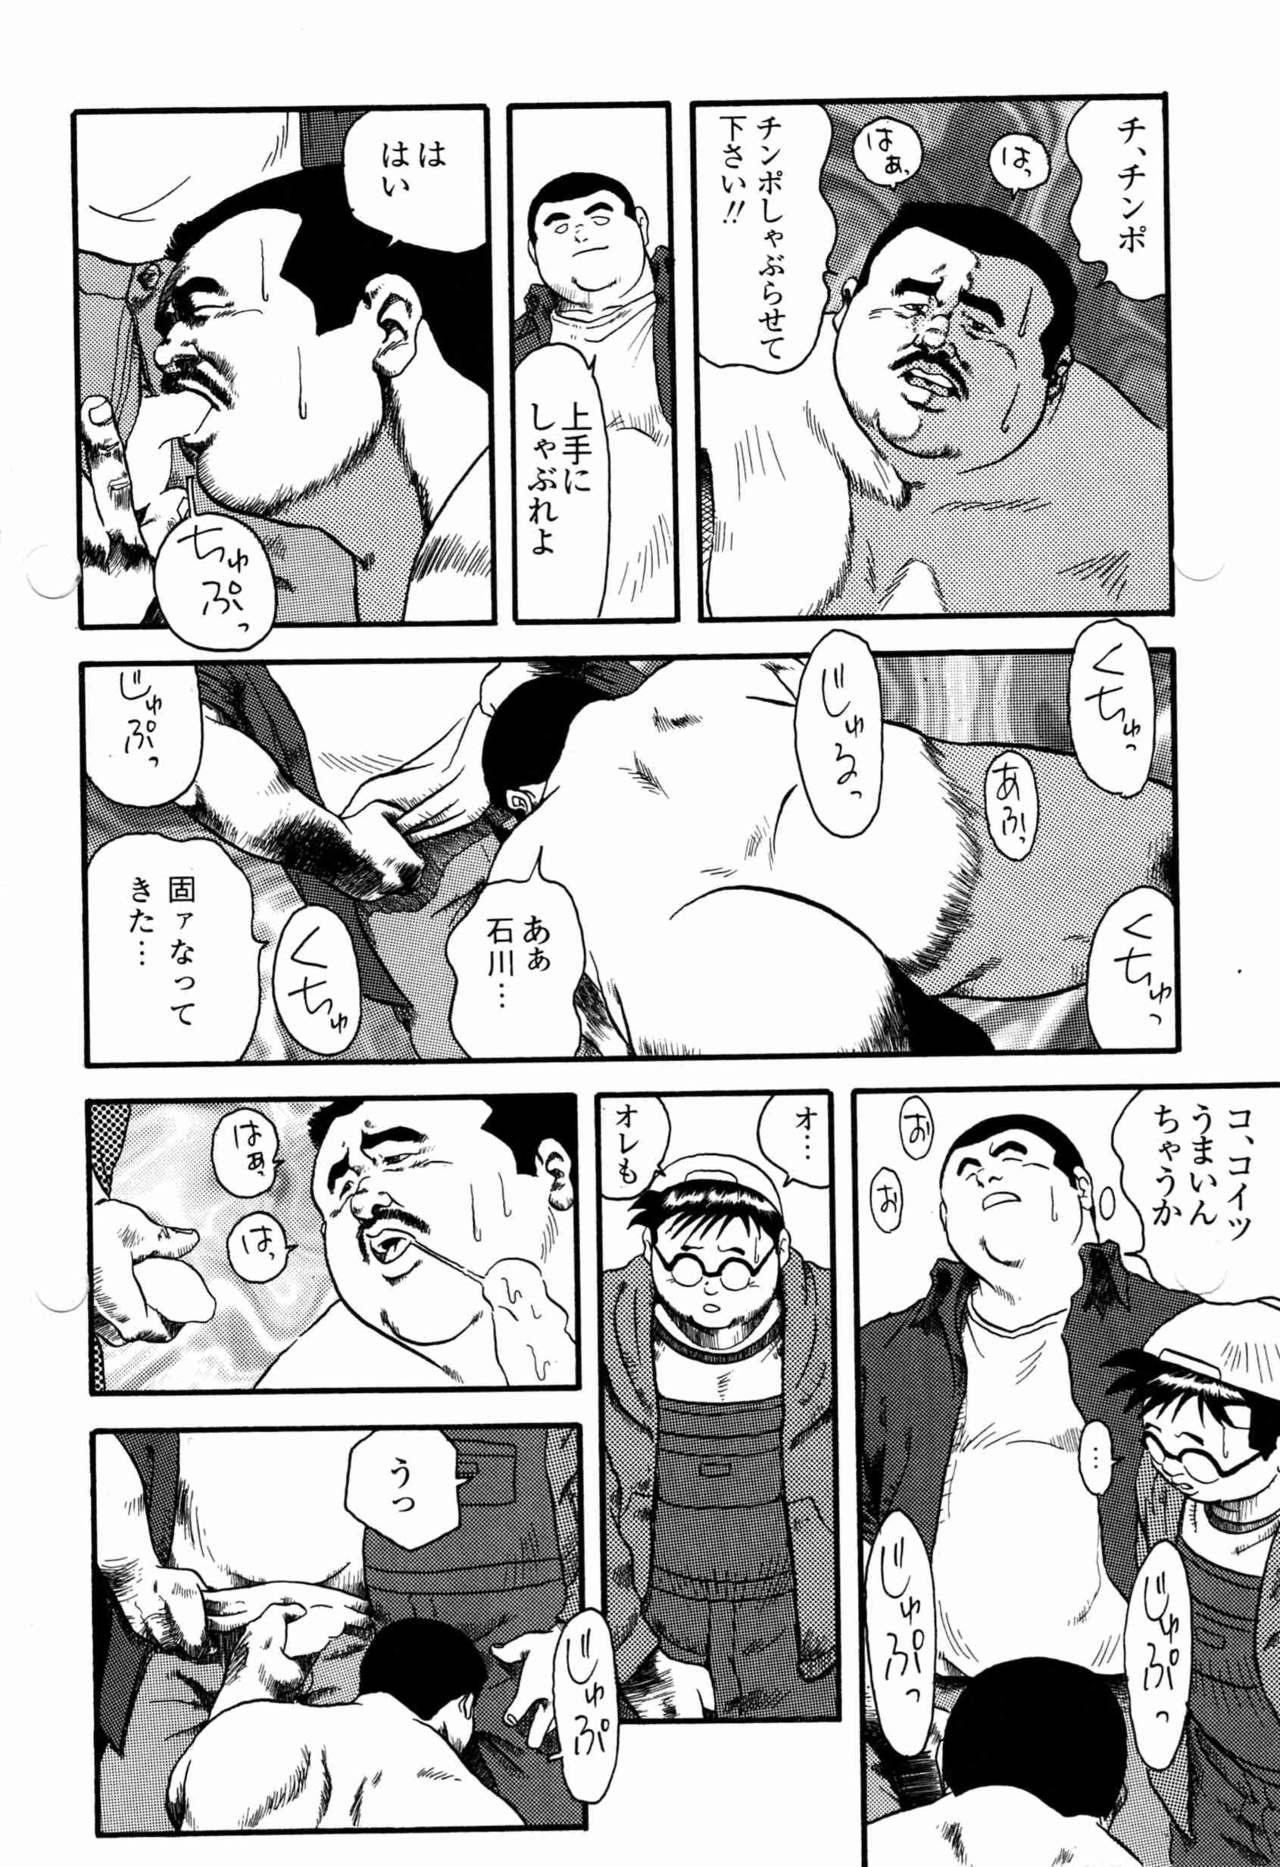 8teenxxx Gakkou no Kaidan Tanned - Page 12